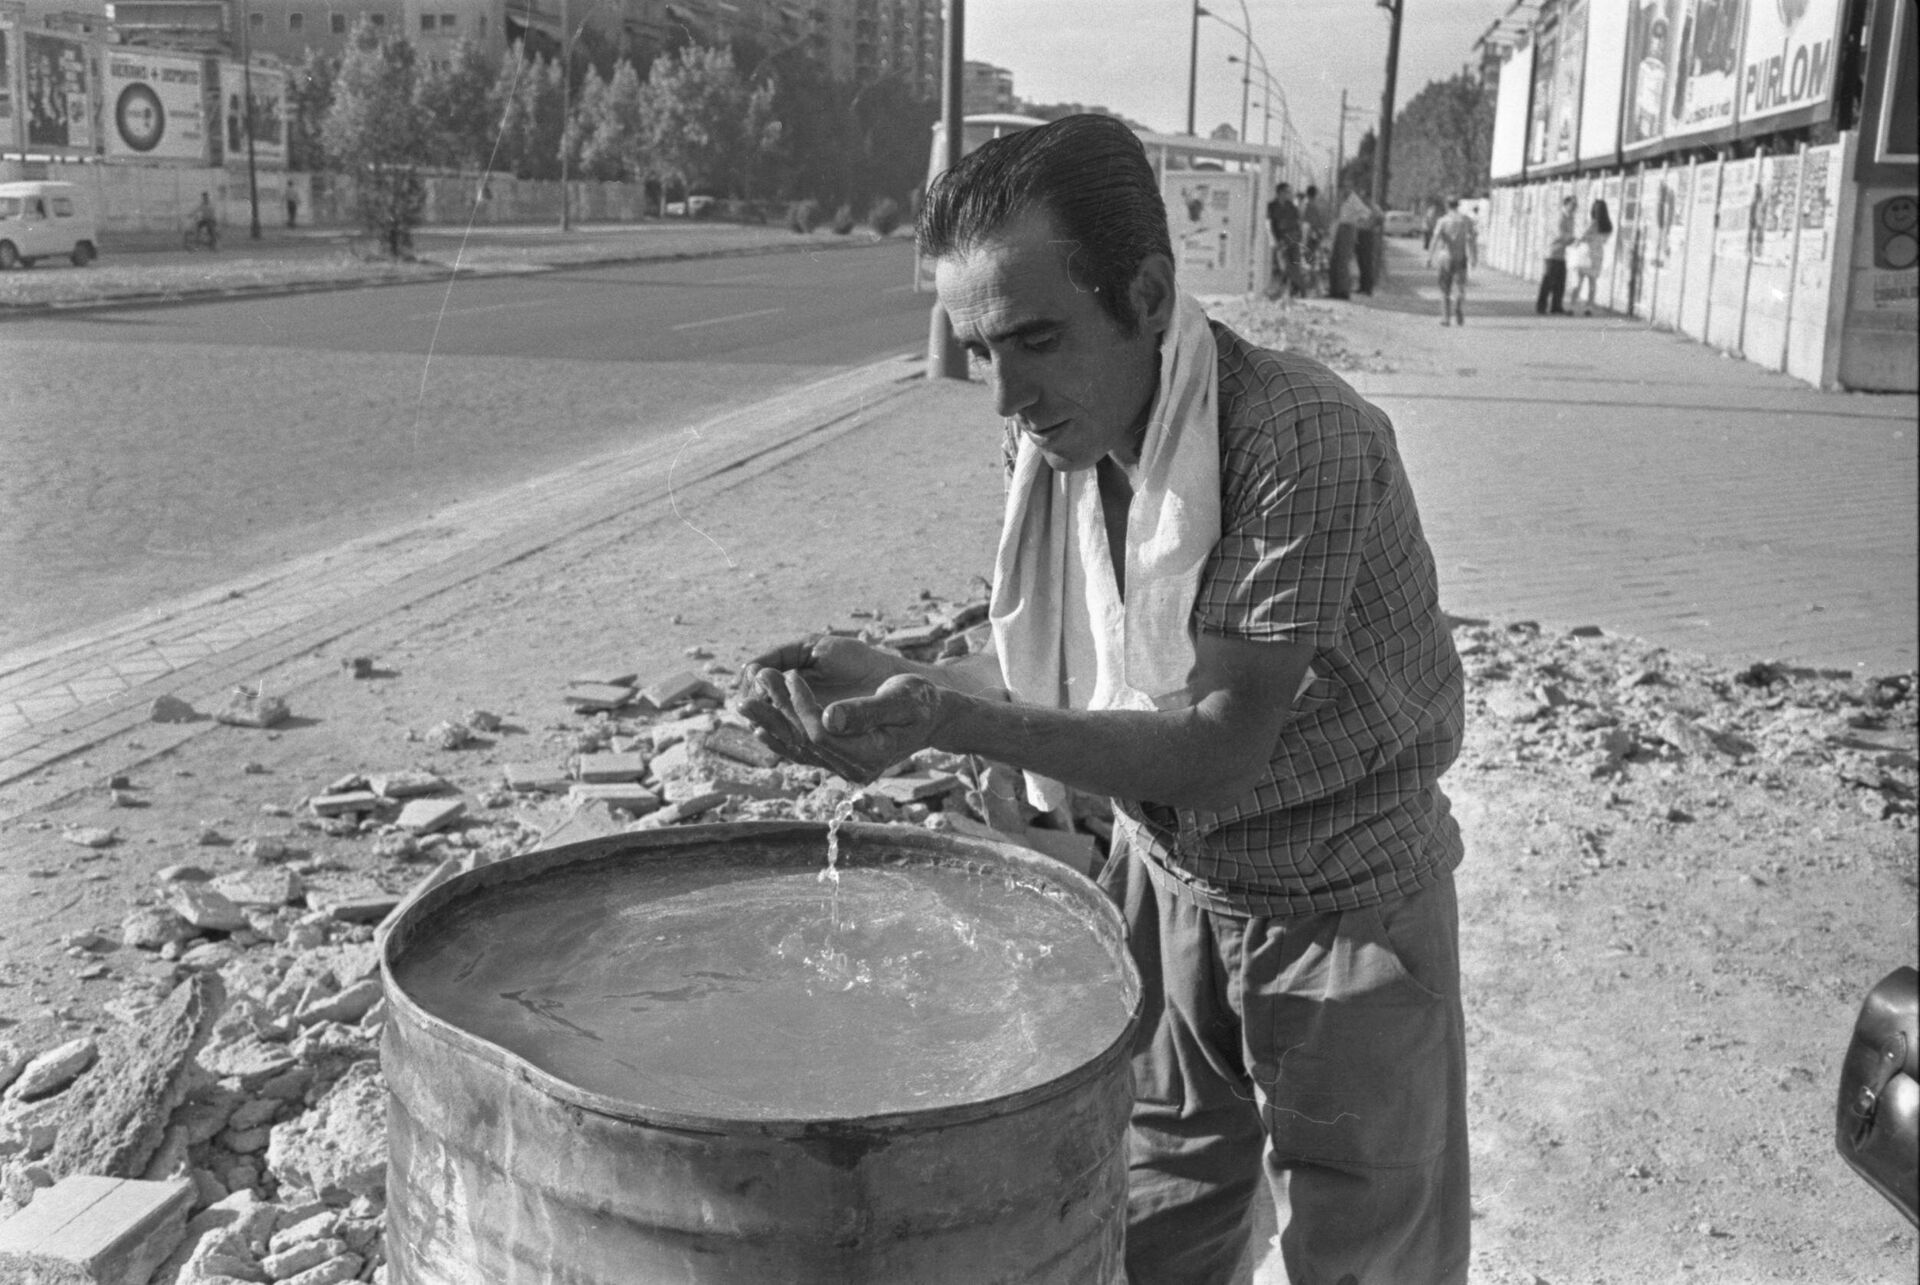 Obrero de la construcción refrescándose en un bidón. Madrid, 1954 - Sputnik Mundo, 1920, 17.09.2021